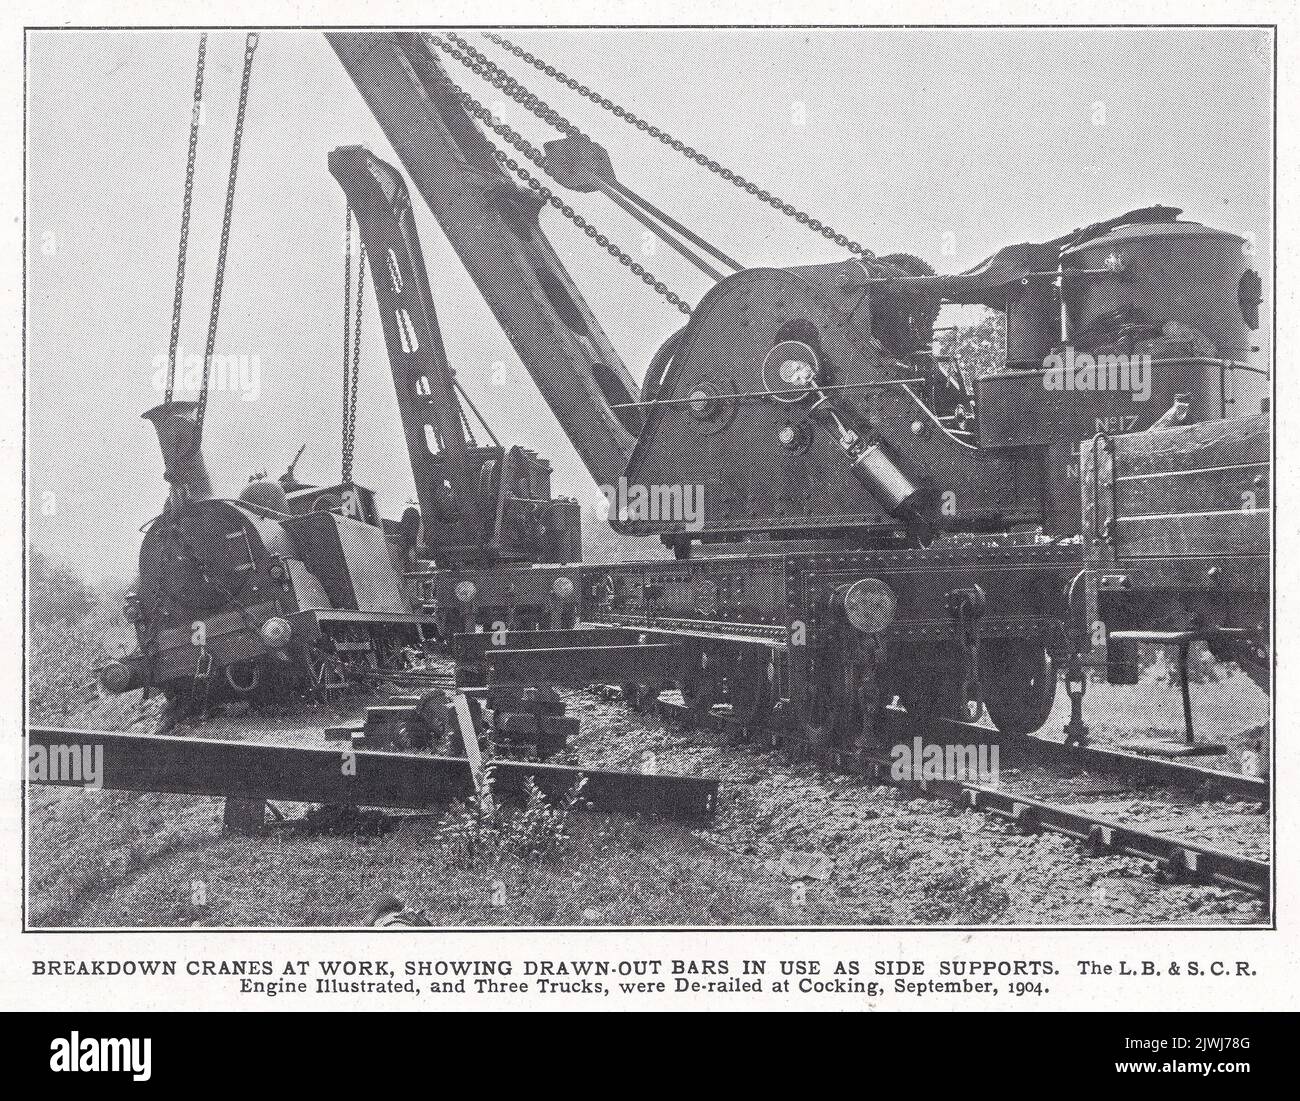 El motor y camiones de L. B. & S. C. R. descarrilaron en Cocking 1904. Grúas de rotura en el trabajo que muestran barras dibujadas en uso como soportes laterales. Foto de stock